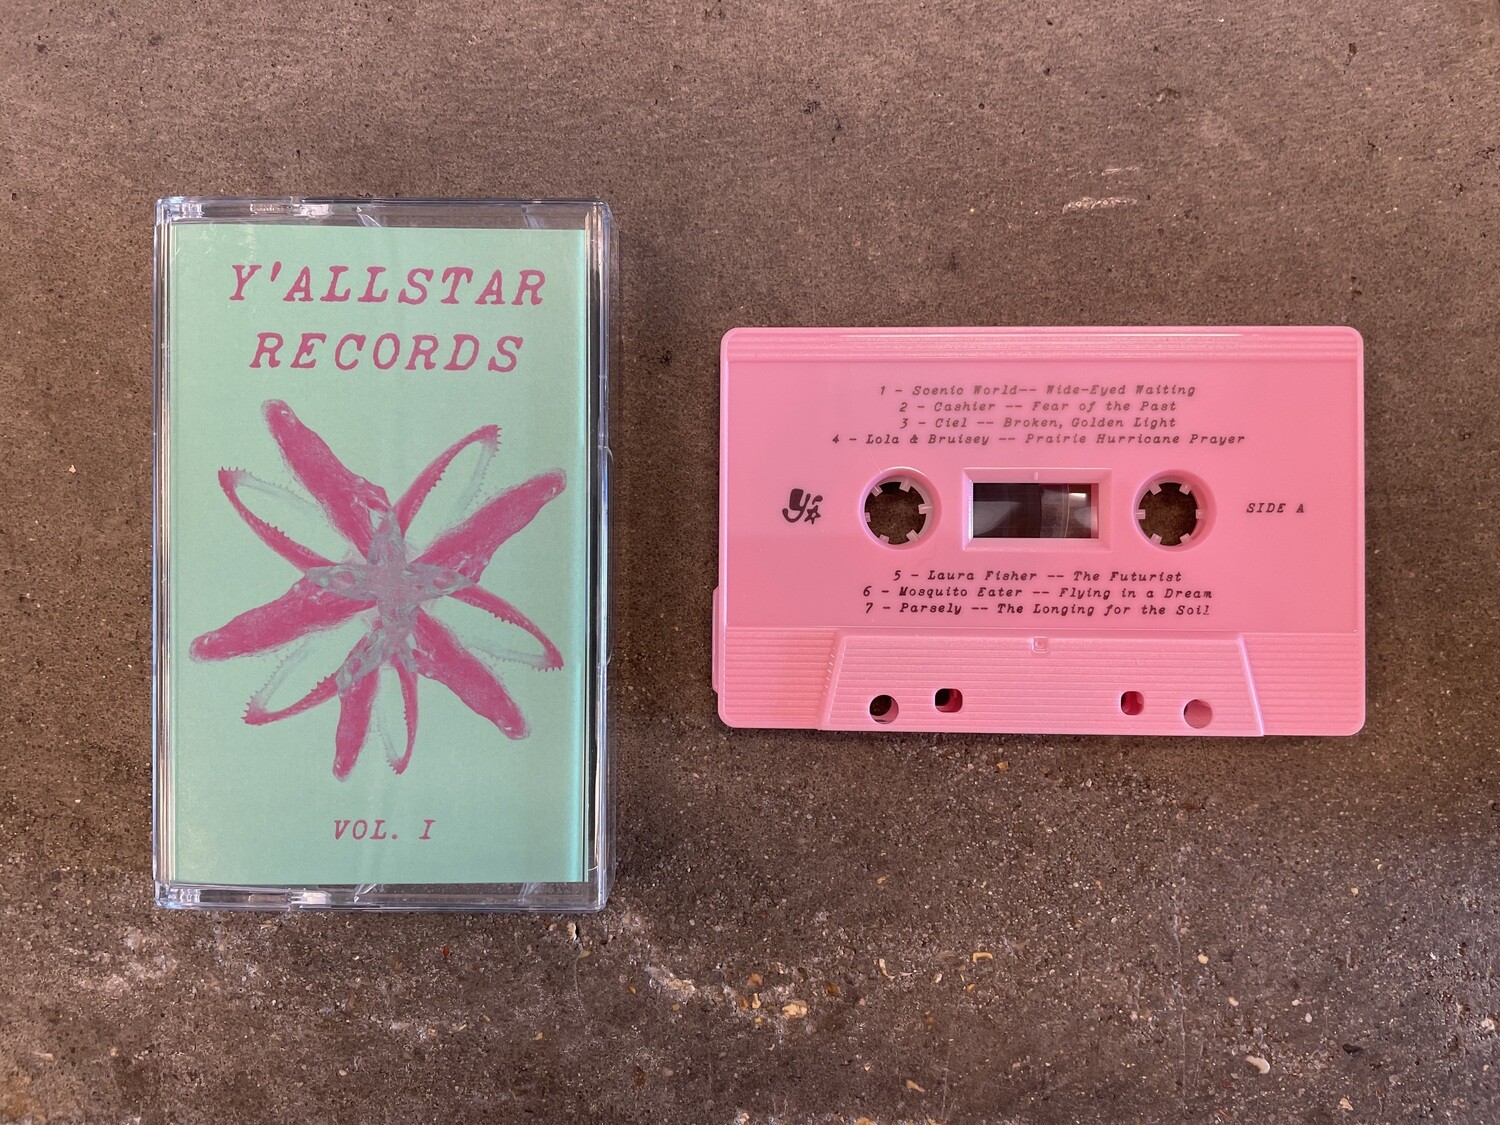 Various "Y’allstar Records: Vol. 1" *TAPE* 